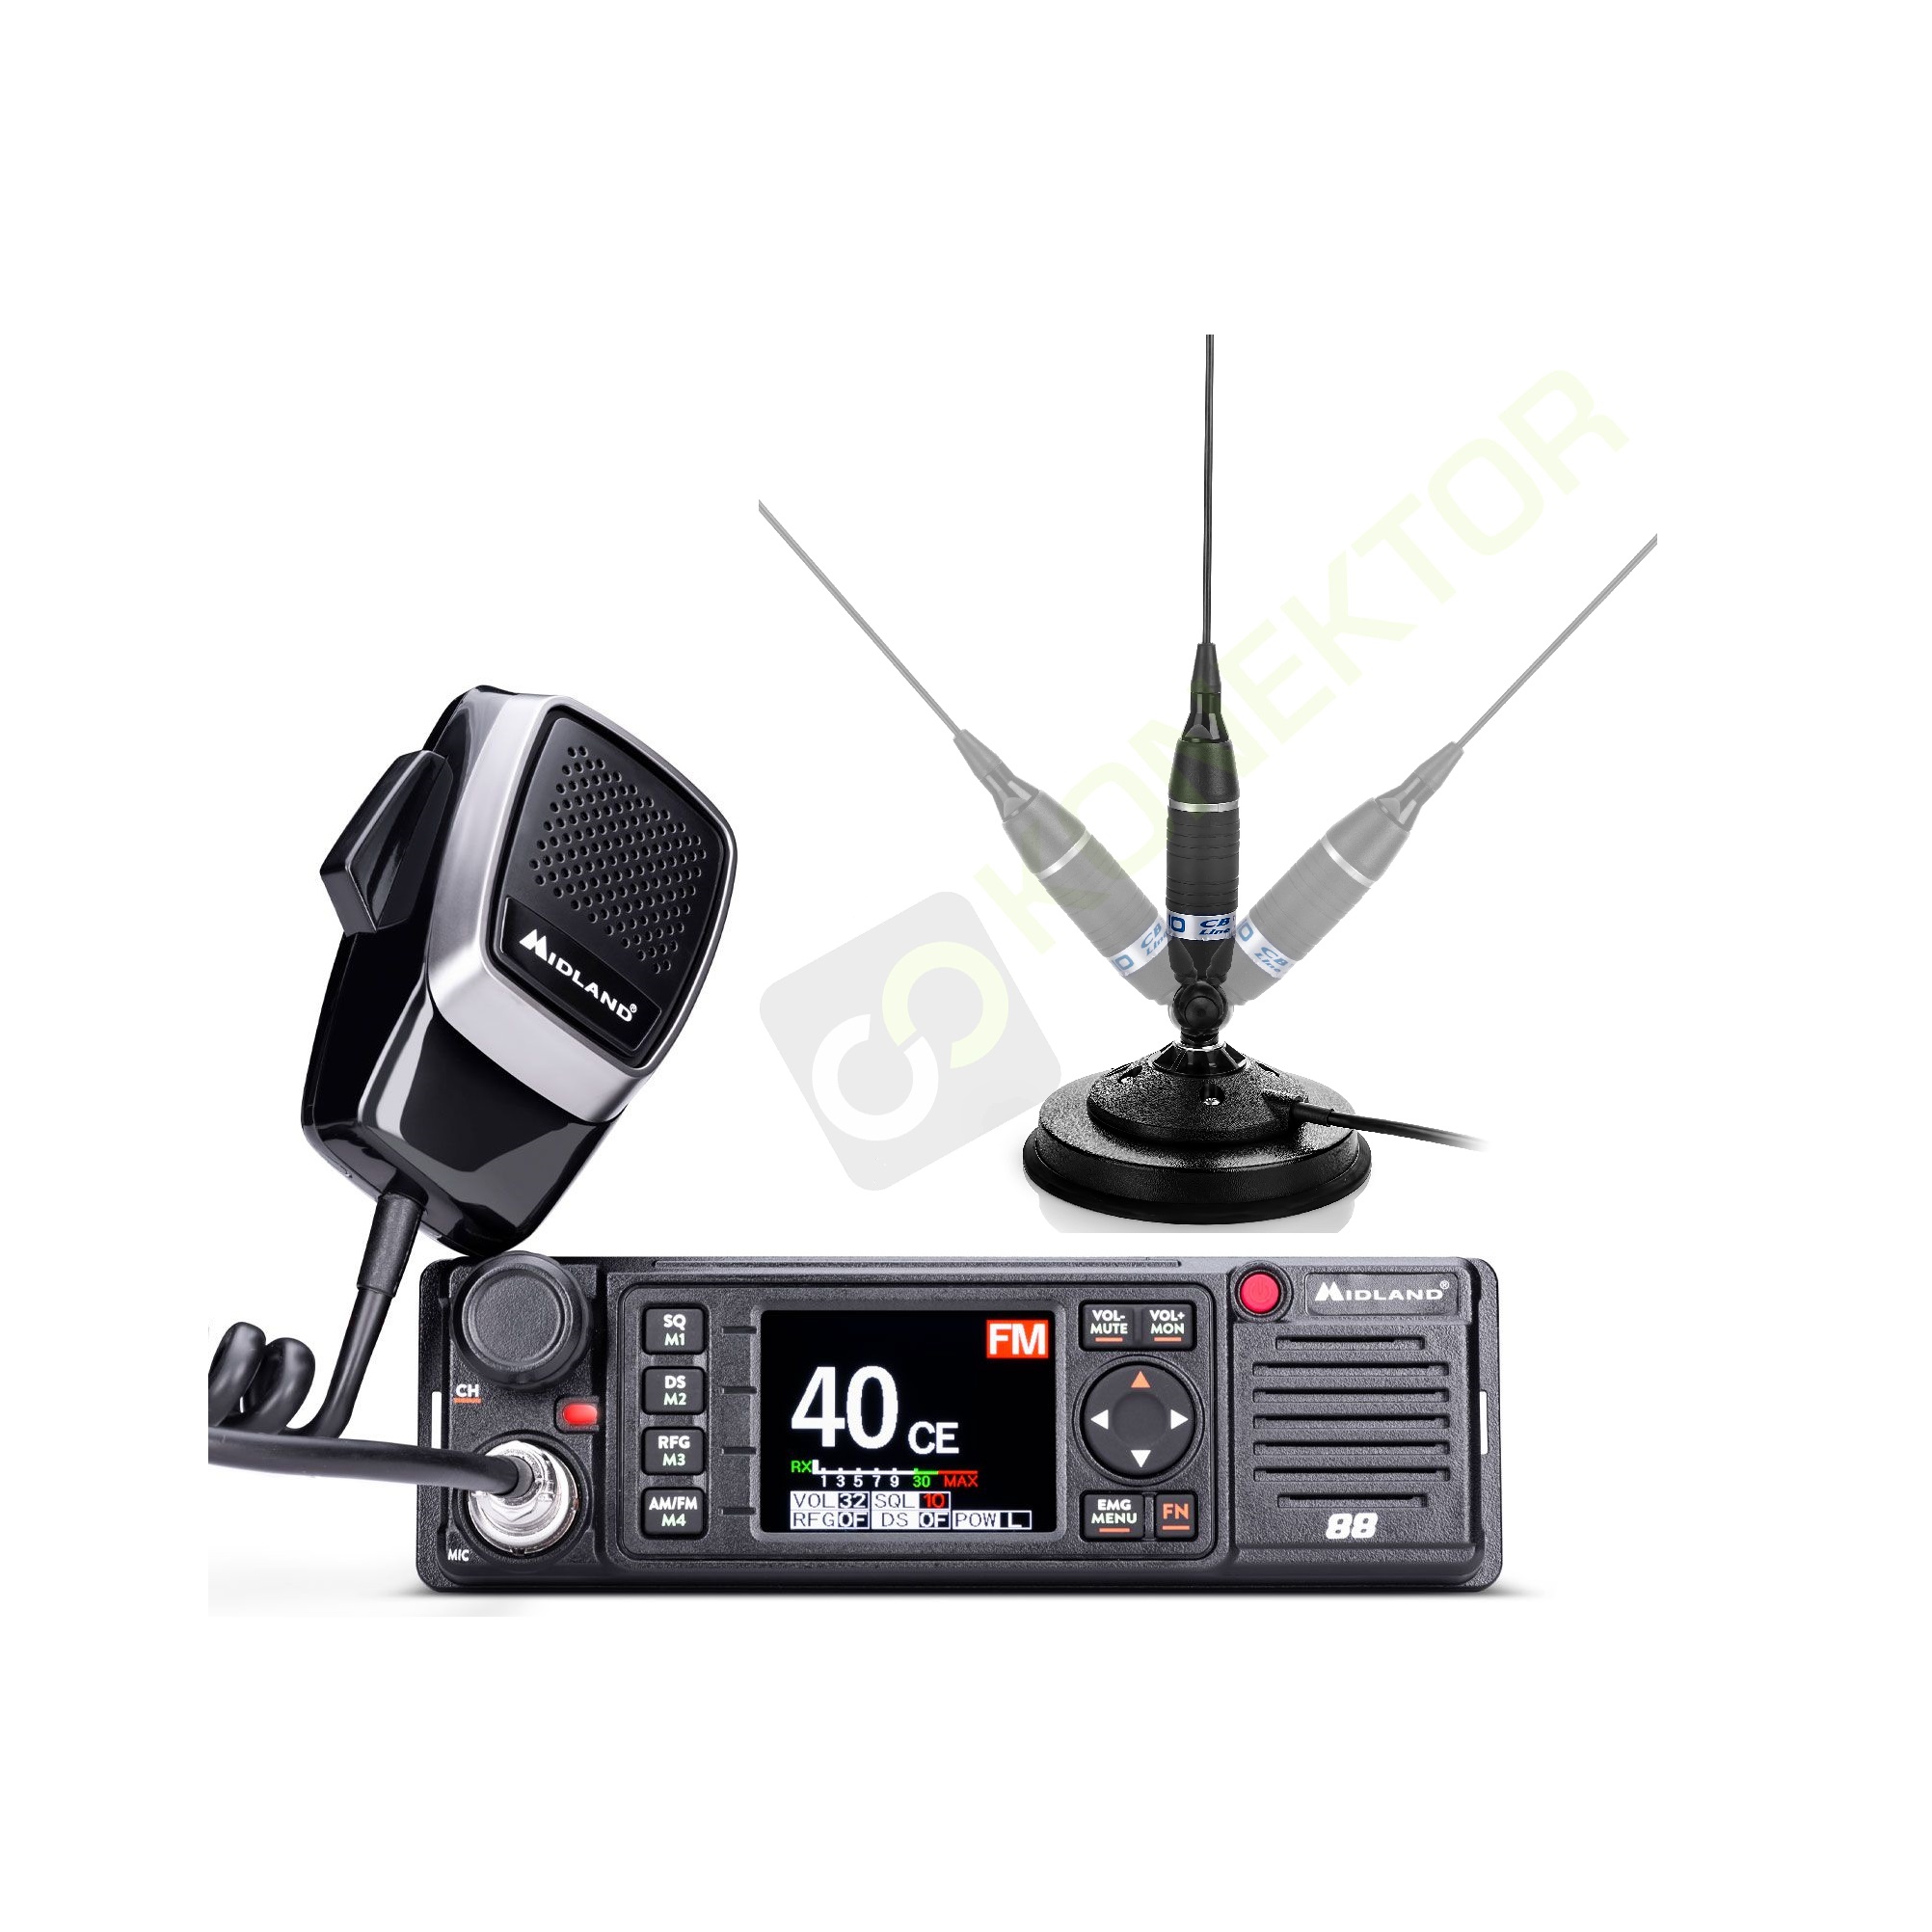 manipulate carbon Pole MIDLAND 88 + Sirio Omega 27 MAG 125 antena CB 95cm zestaw CB radio ::  KONEKTOR5000.PL radiokomunikacja / akcesoria motoryzacyjne